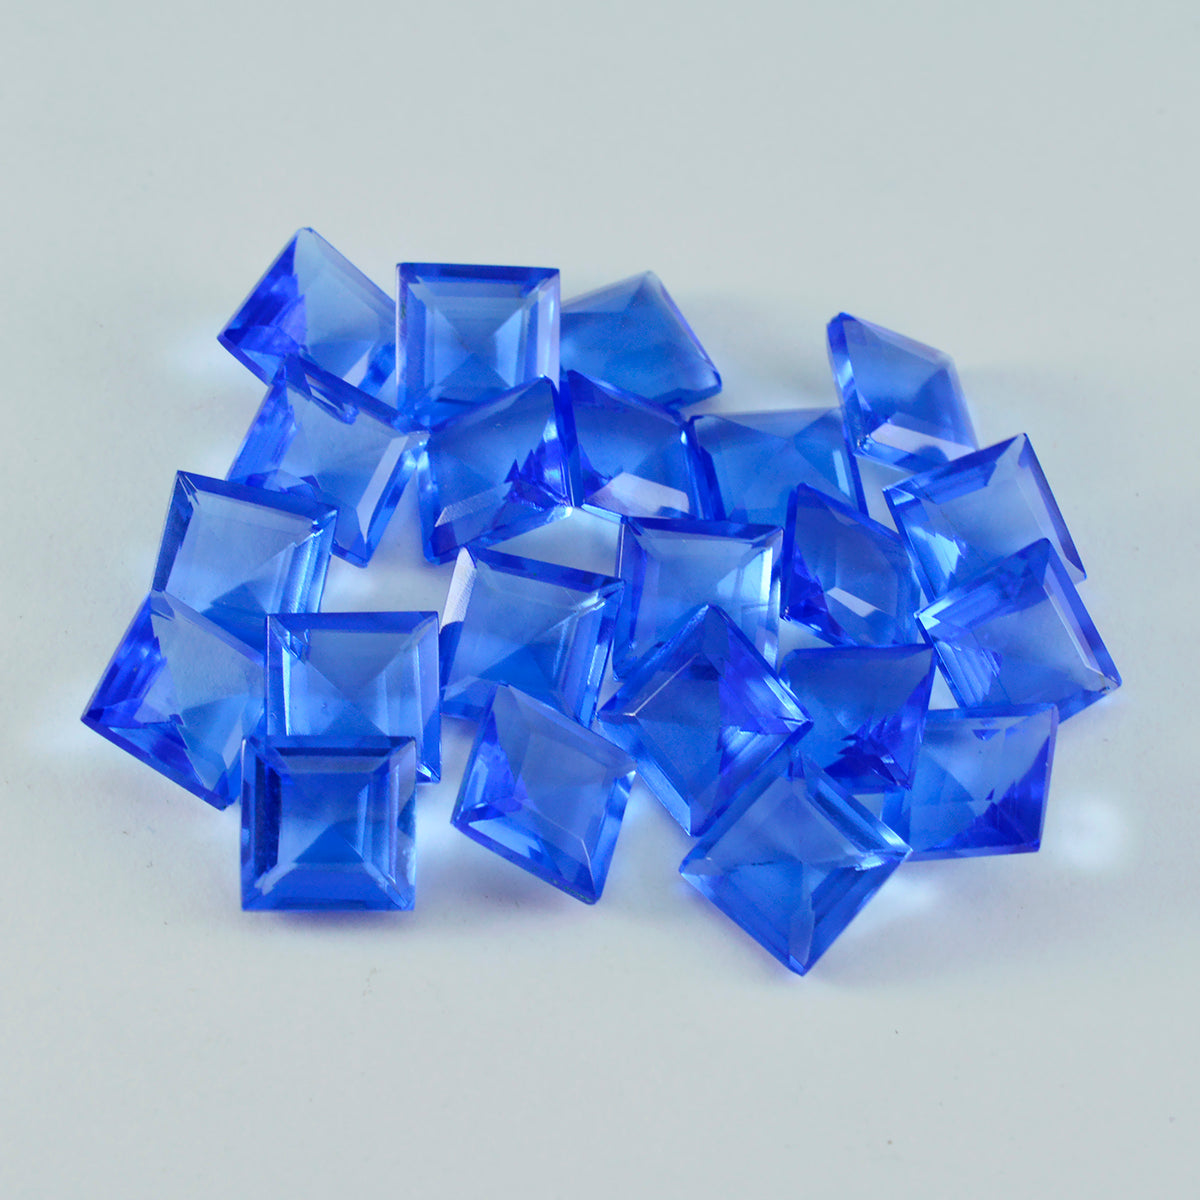 riyogems 1 шт. синий сапфир cz ограненный 10x10 мм квадратной формы красивый качественный свободный драгоценный камень